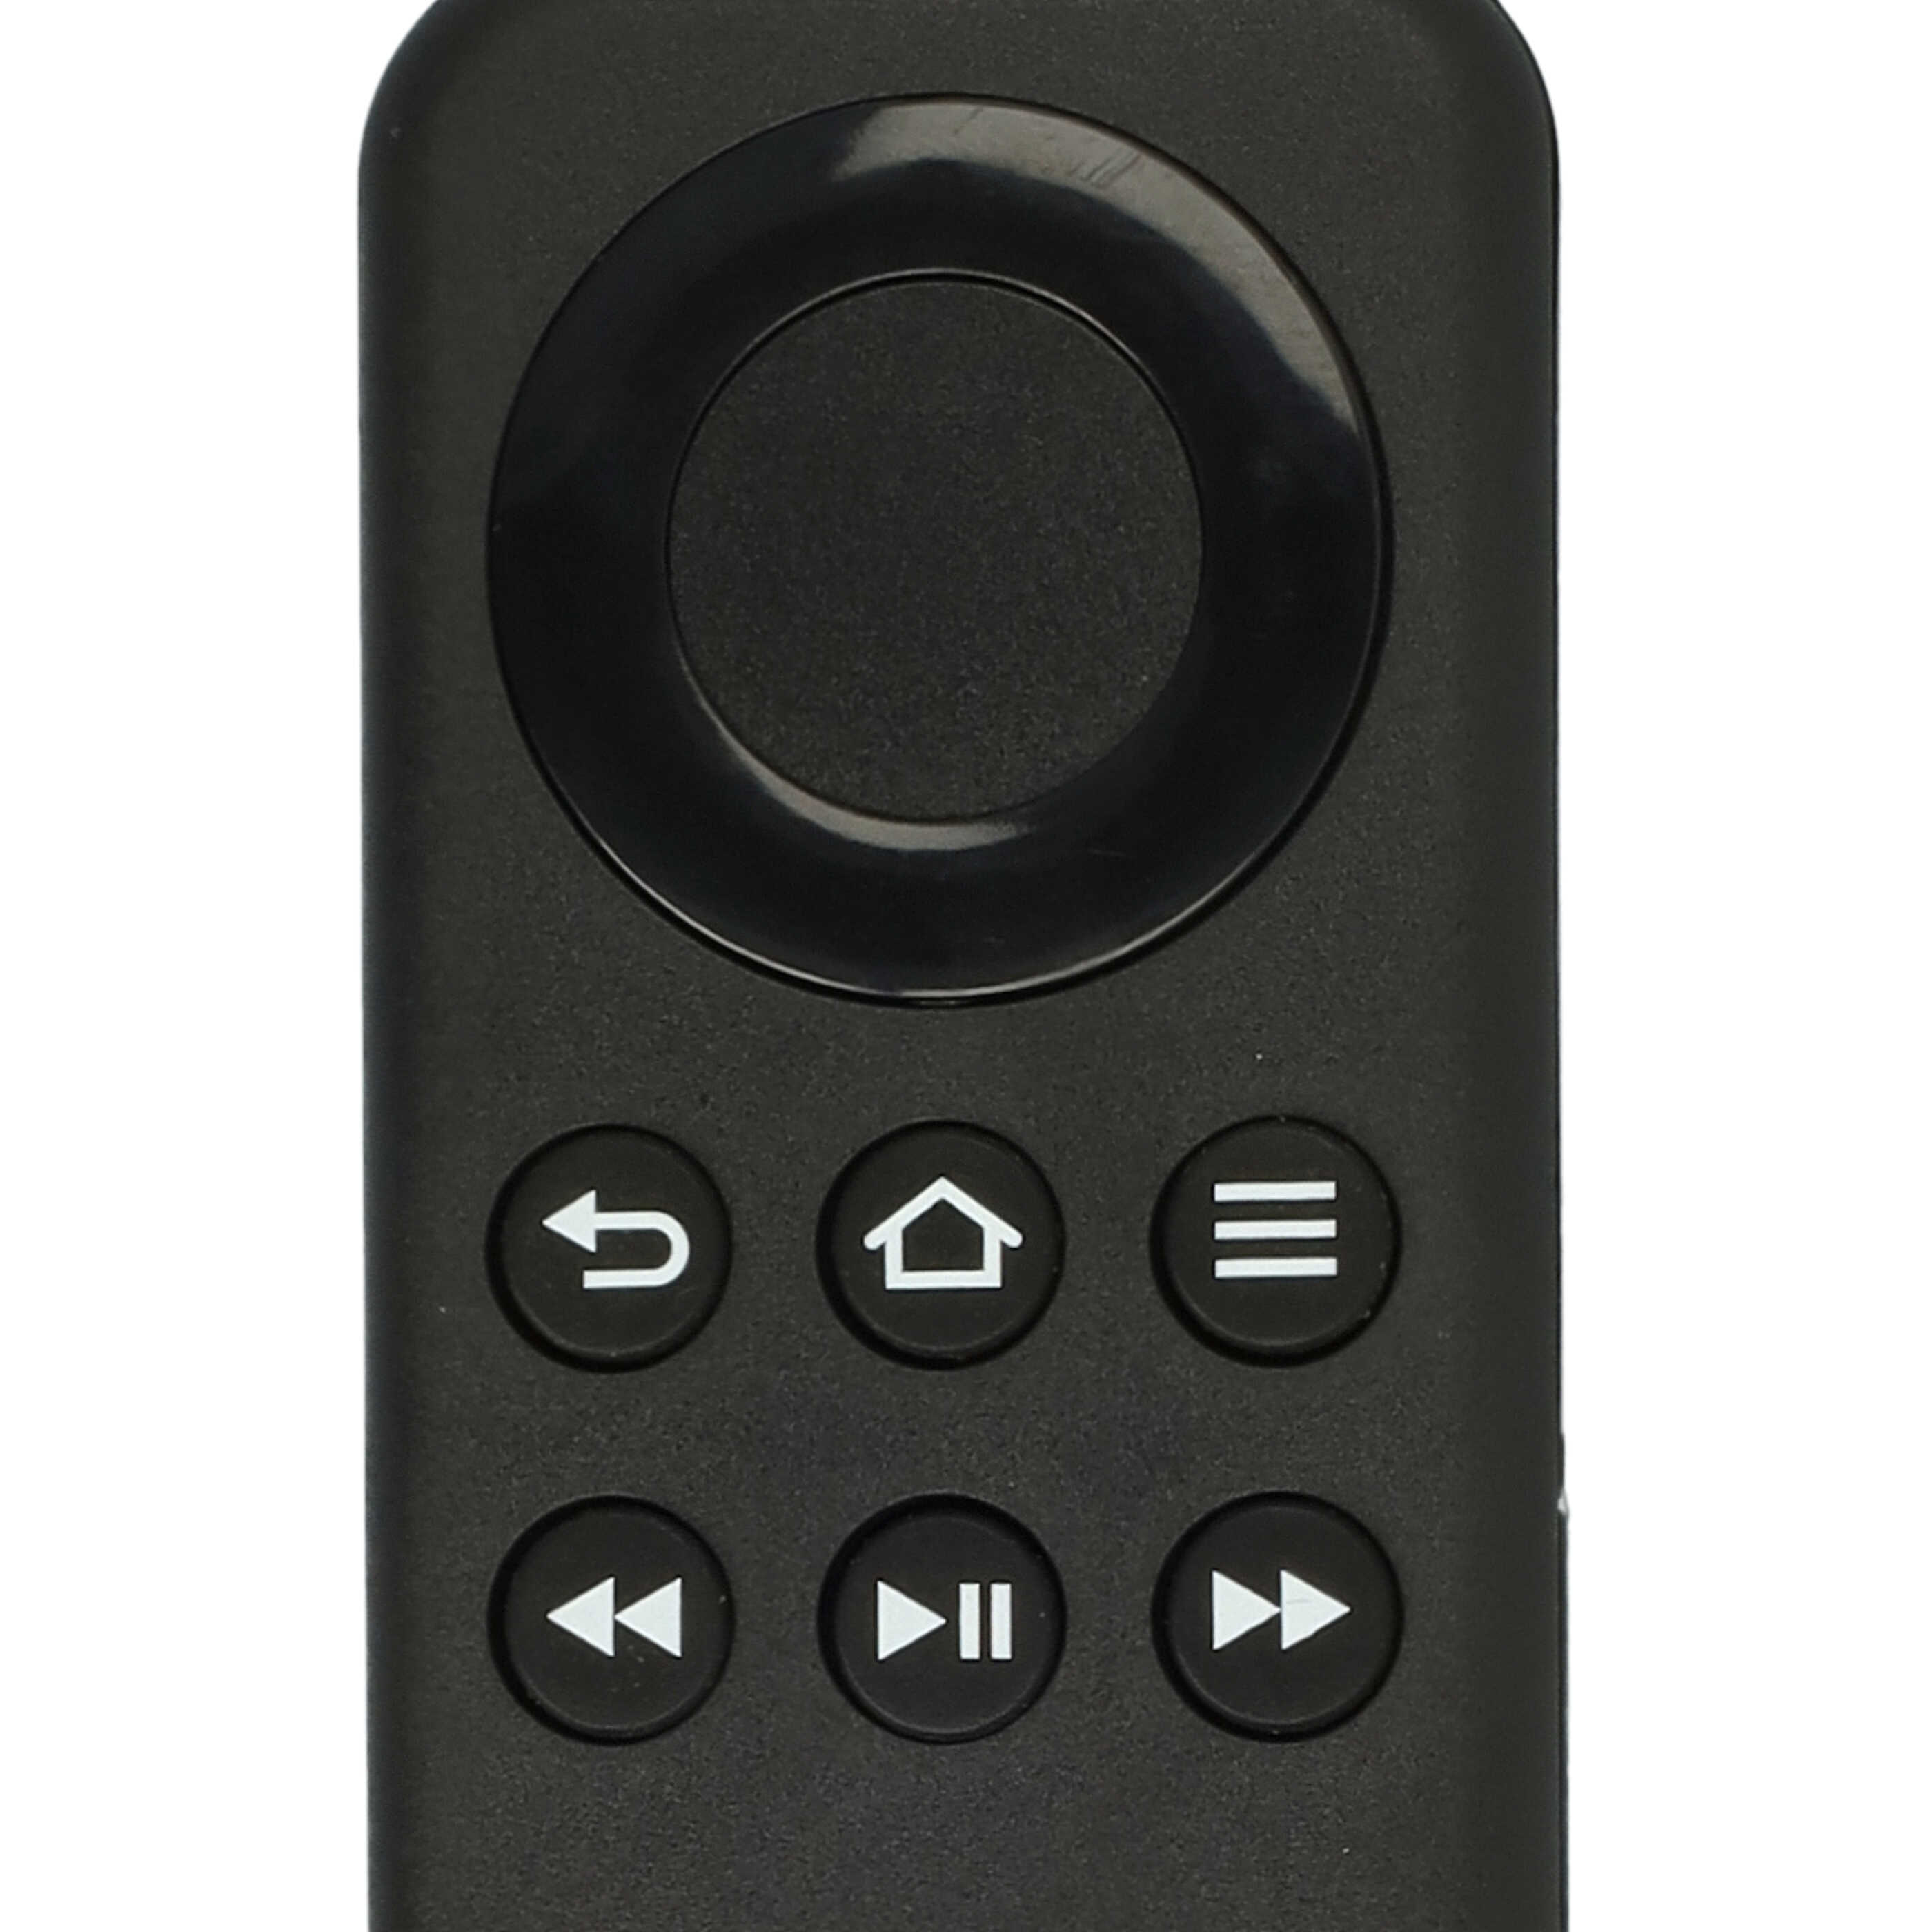 Mando a distancia reemplaza Amazon CV98LM para Streaming Box, Internet-TV Box Amazon